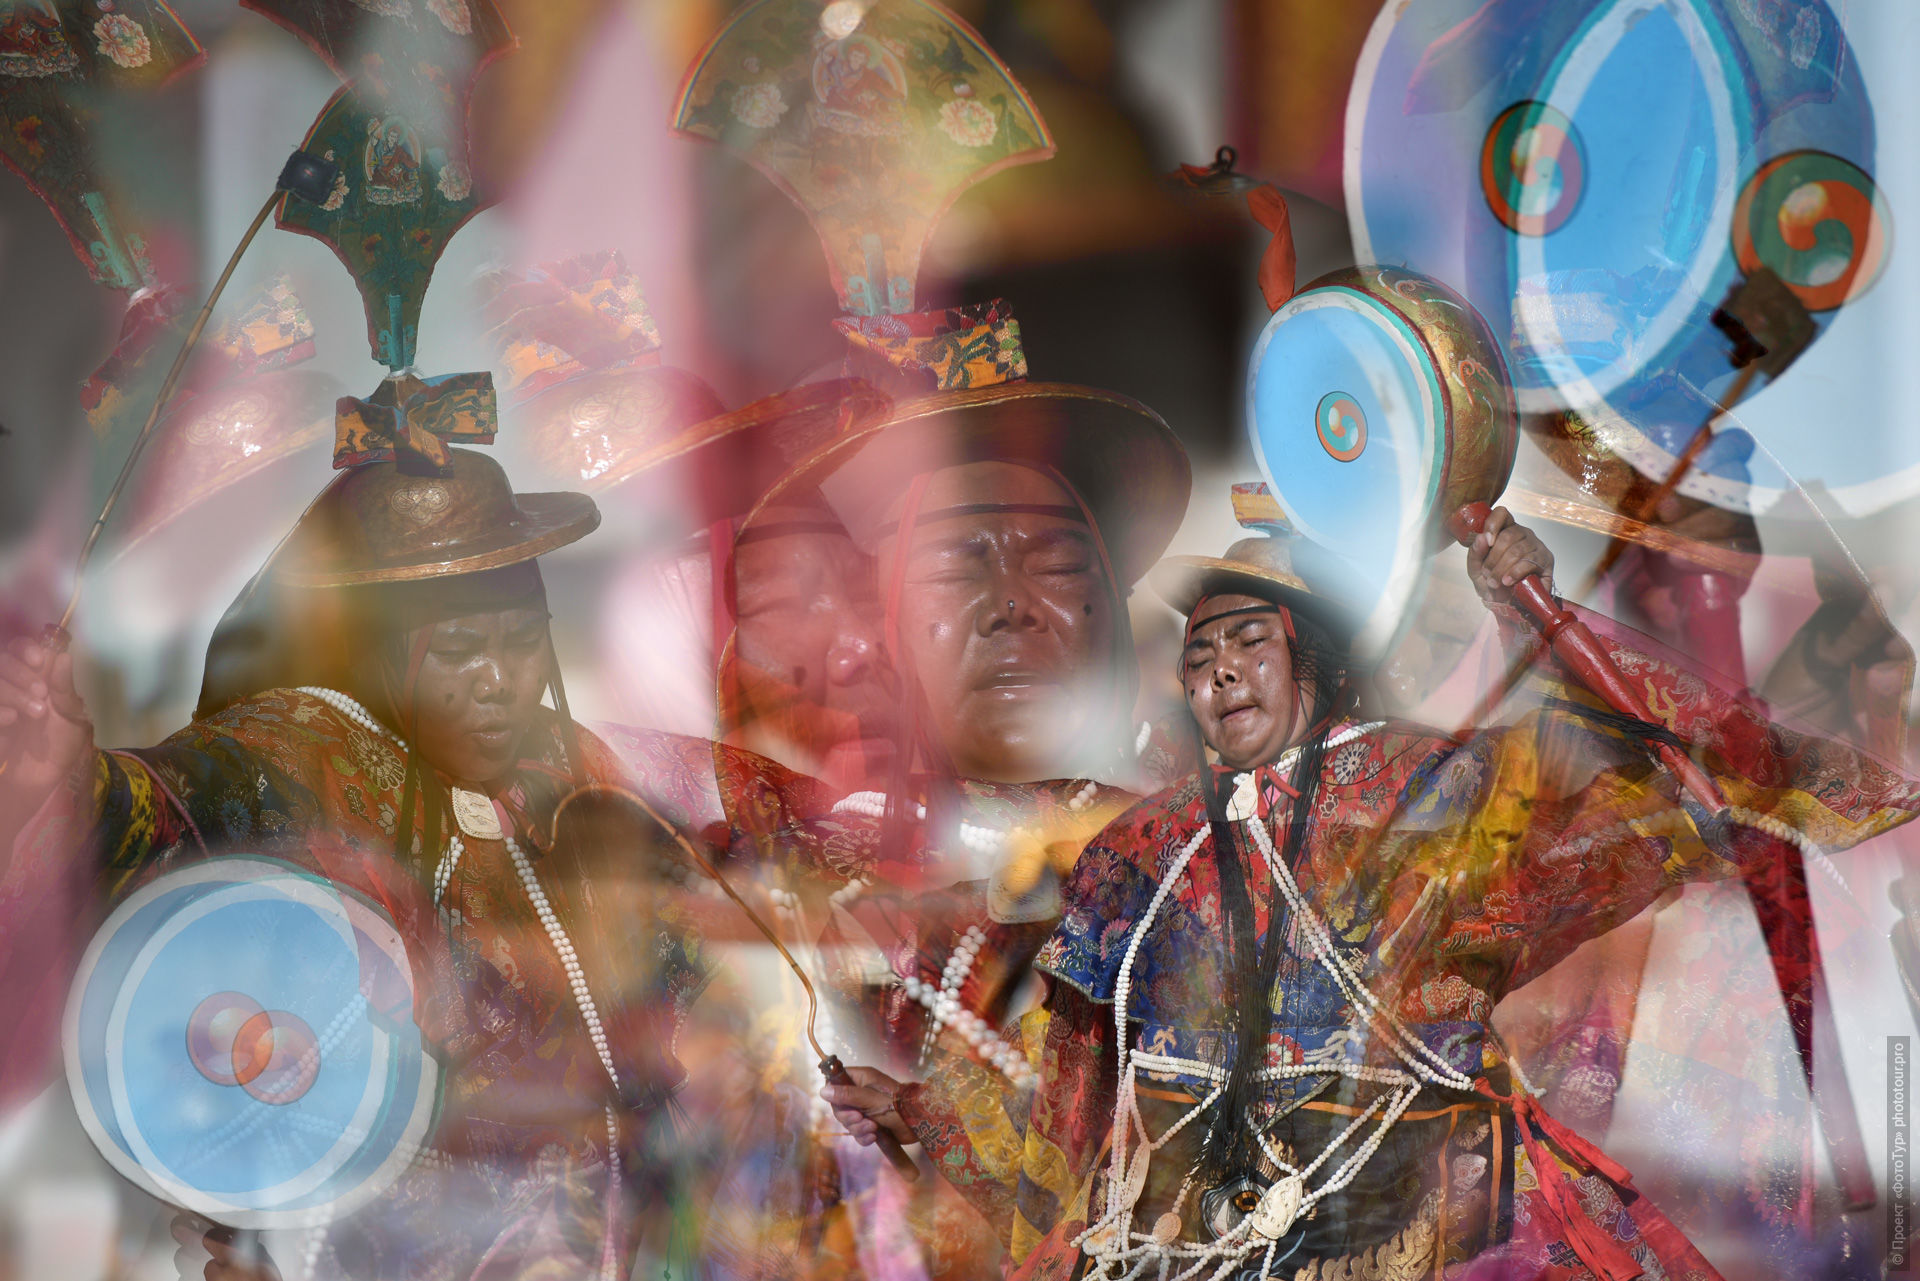 Dance with drums on the mystery of Sashikul. Photo tour / tour Tibet of Lake-1: Pangong, Tso Moriri, Tso Kar, Tso Chiagar, Dance of Tsam on Lake Pangong, 08.07.-17.07.2022.